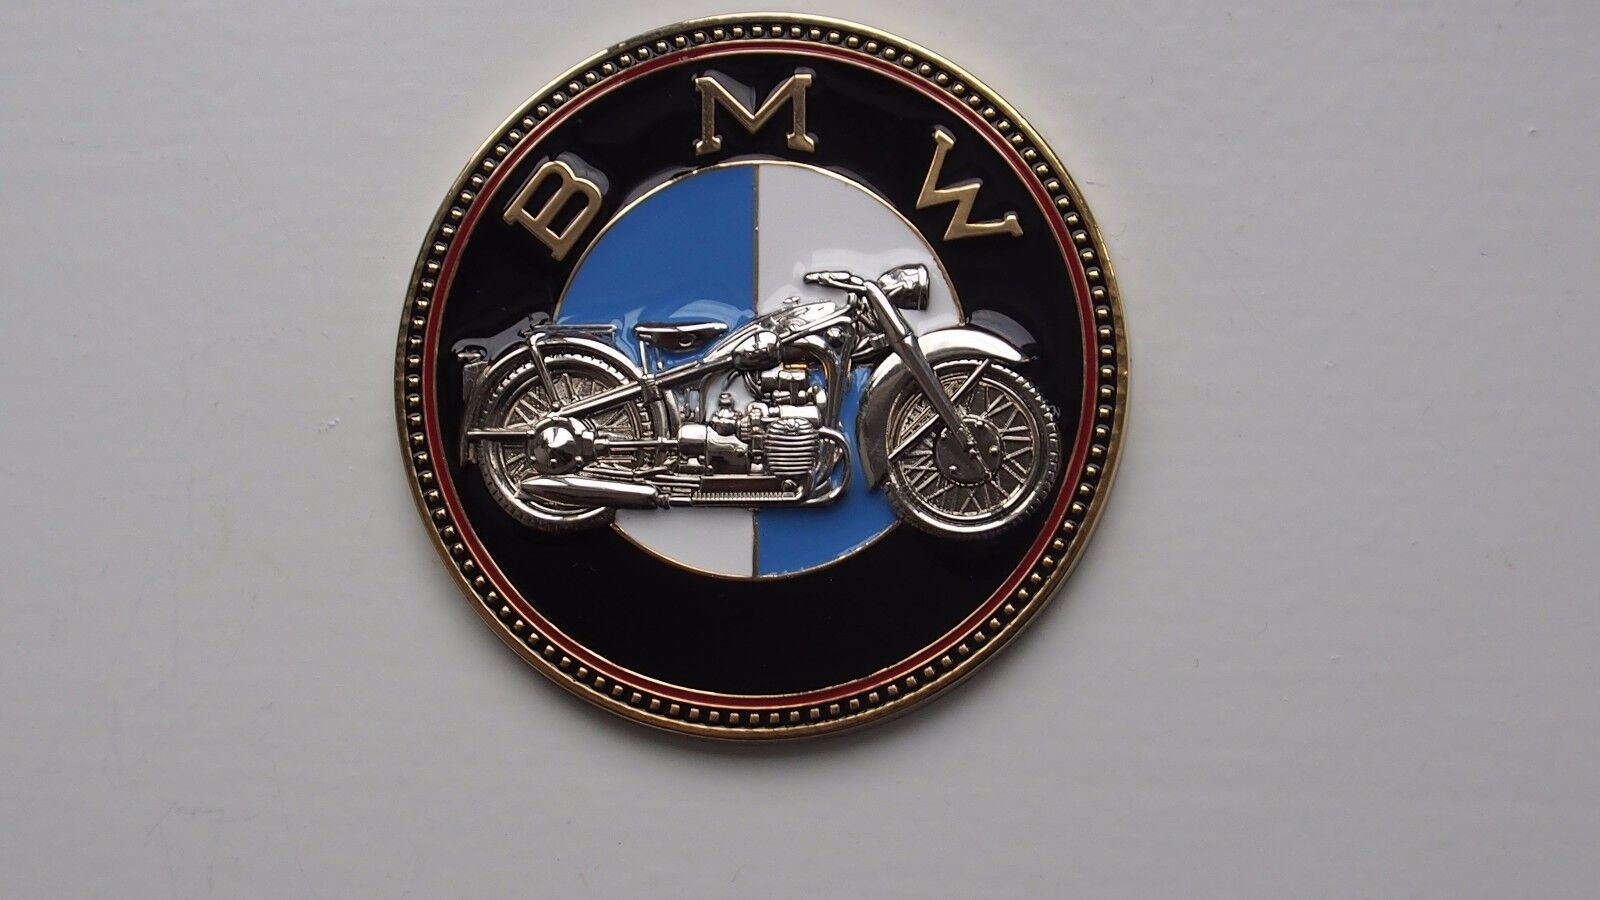 Vintage BMW motorcycle bike emblem badge - BMW motorrad old timer Plakette